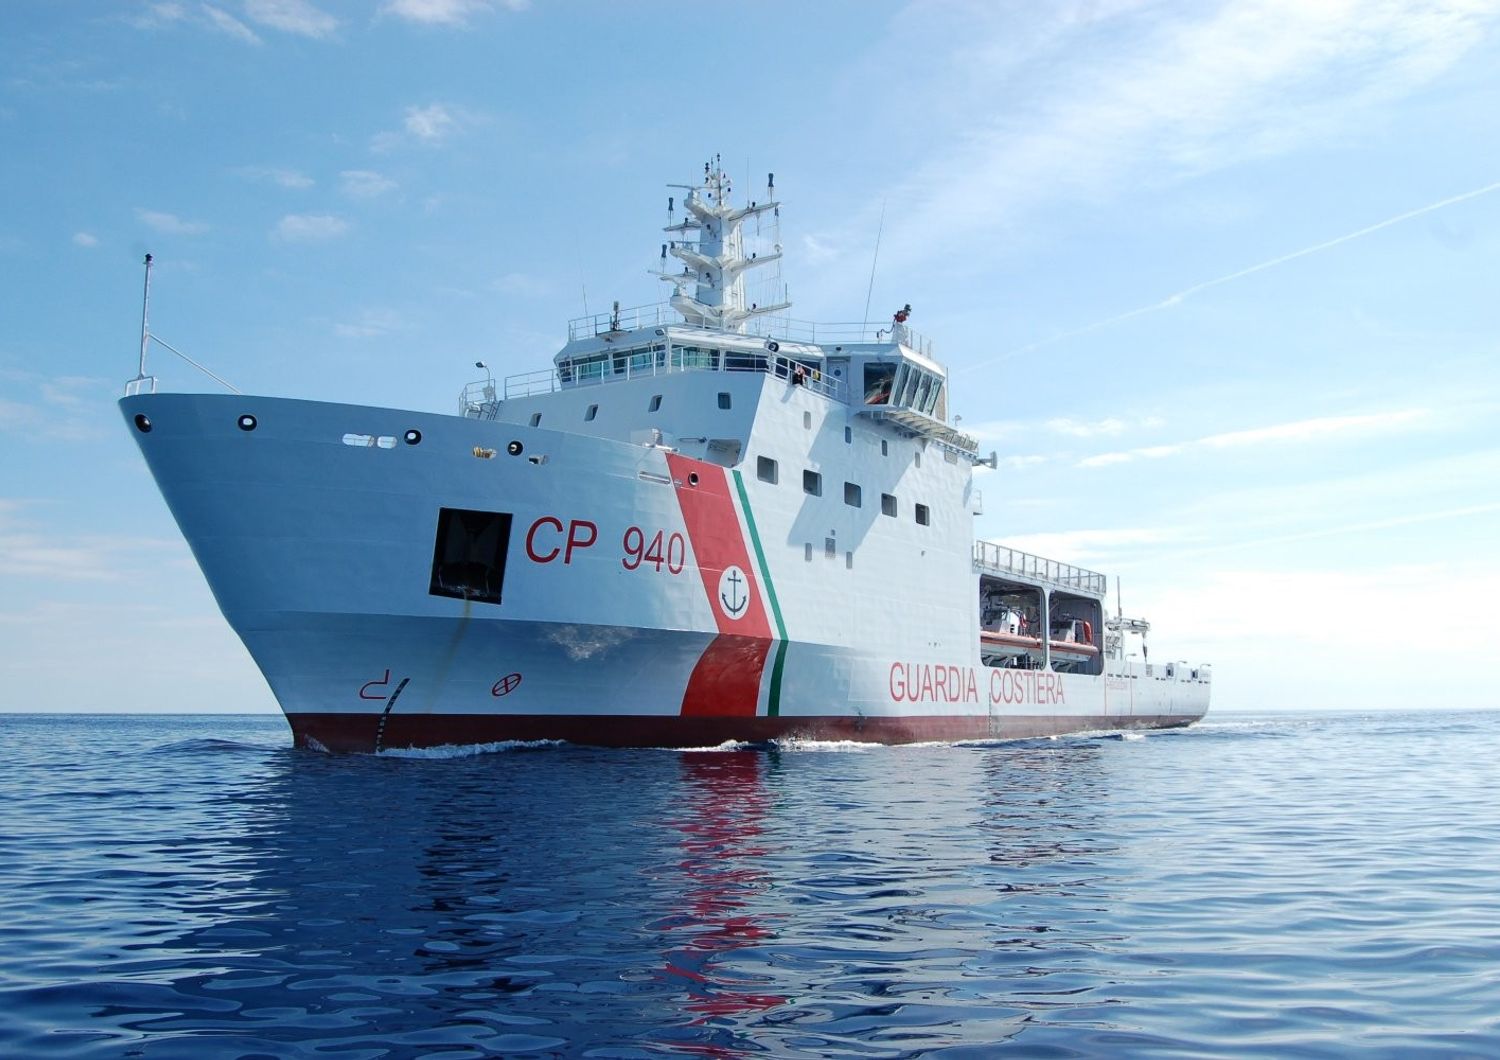 &nbsp;Guardia costiera Nave Dattilo soccorso migranti